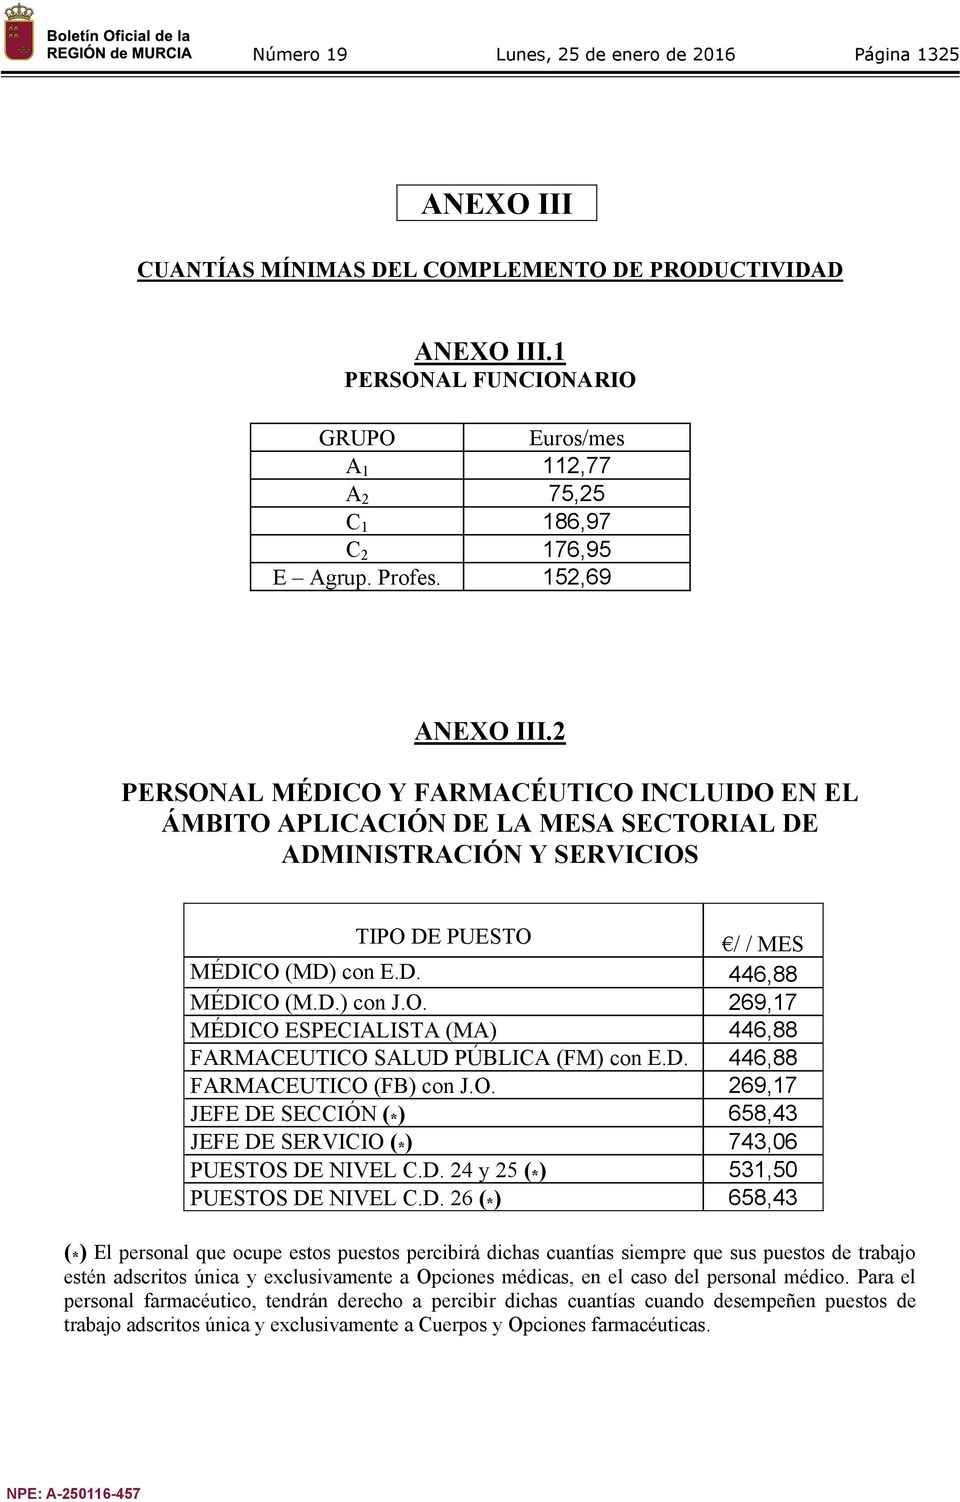 2 PERSONAL MÉDICO Y FARMACÉUTICO INCLUIDO EN EL ÁMBITO APLICACIÓN DE LA MESA SECTORIAL DE ADMINISTRACIÓN Y SERVICIOS TIPO DE PUESTO / / MES MÉDICO (MD) con E.D. 446,88 MÉDICO (M.D.) con J.O. 269,17 MÉDICO ESPECIALISTA (MA) 446,88 FARMACEUTICO SALUD PÚBLICA (FM) con E.